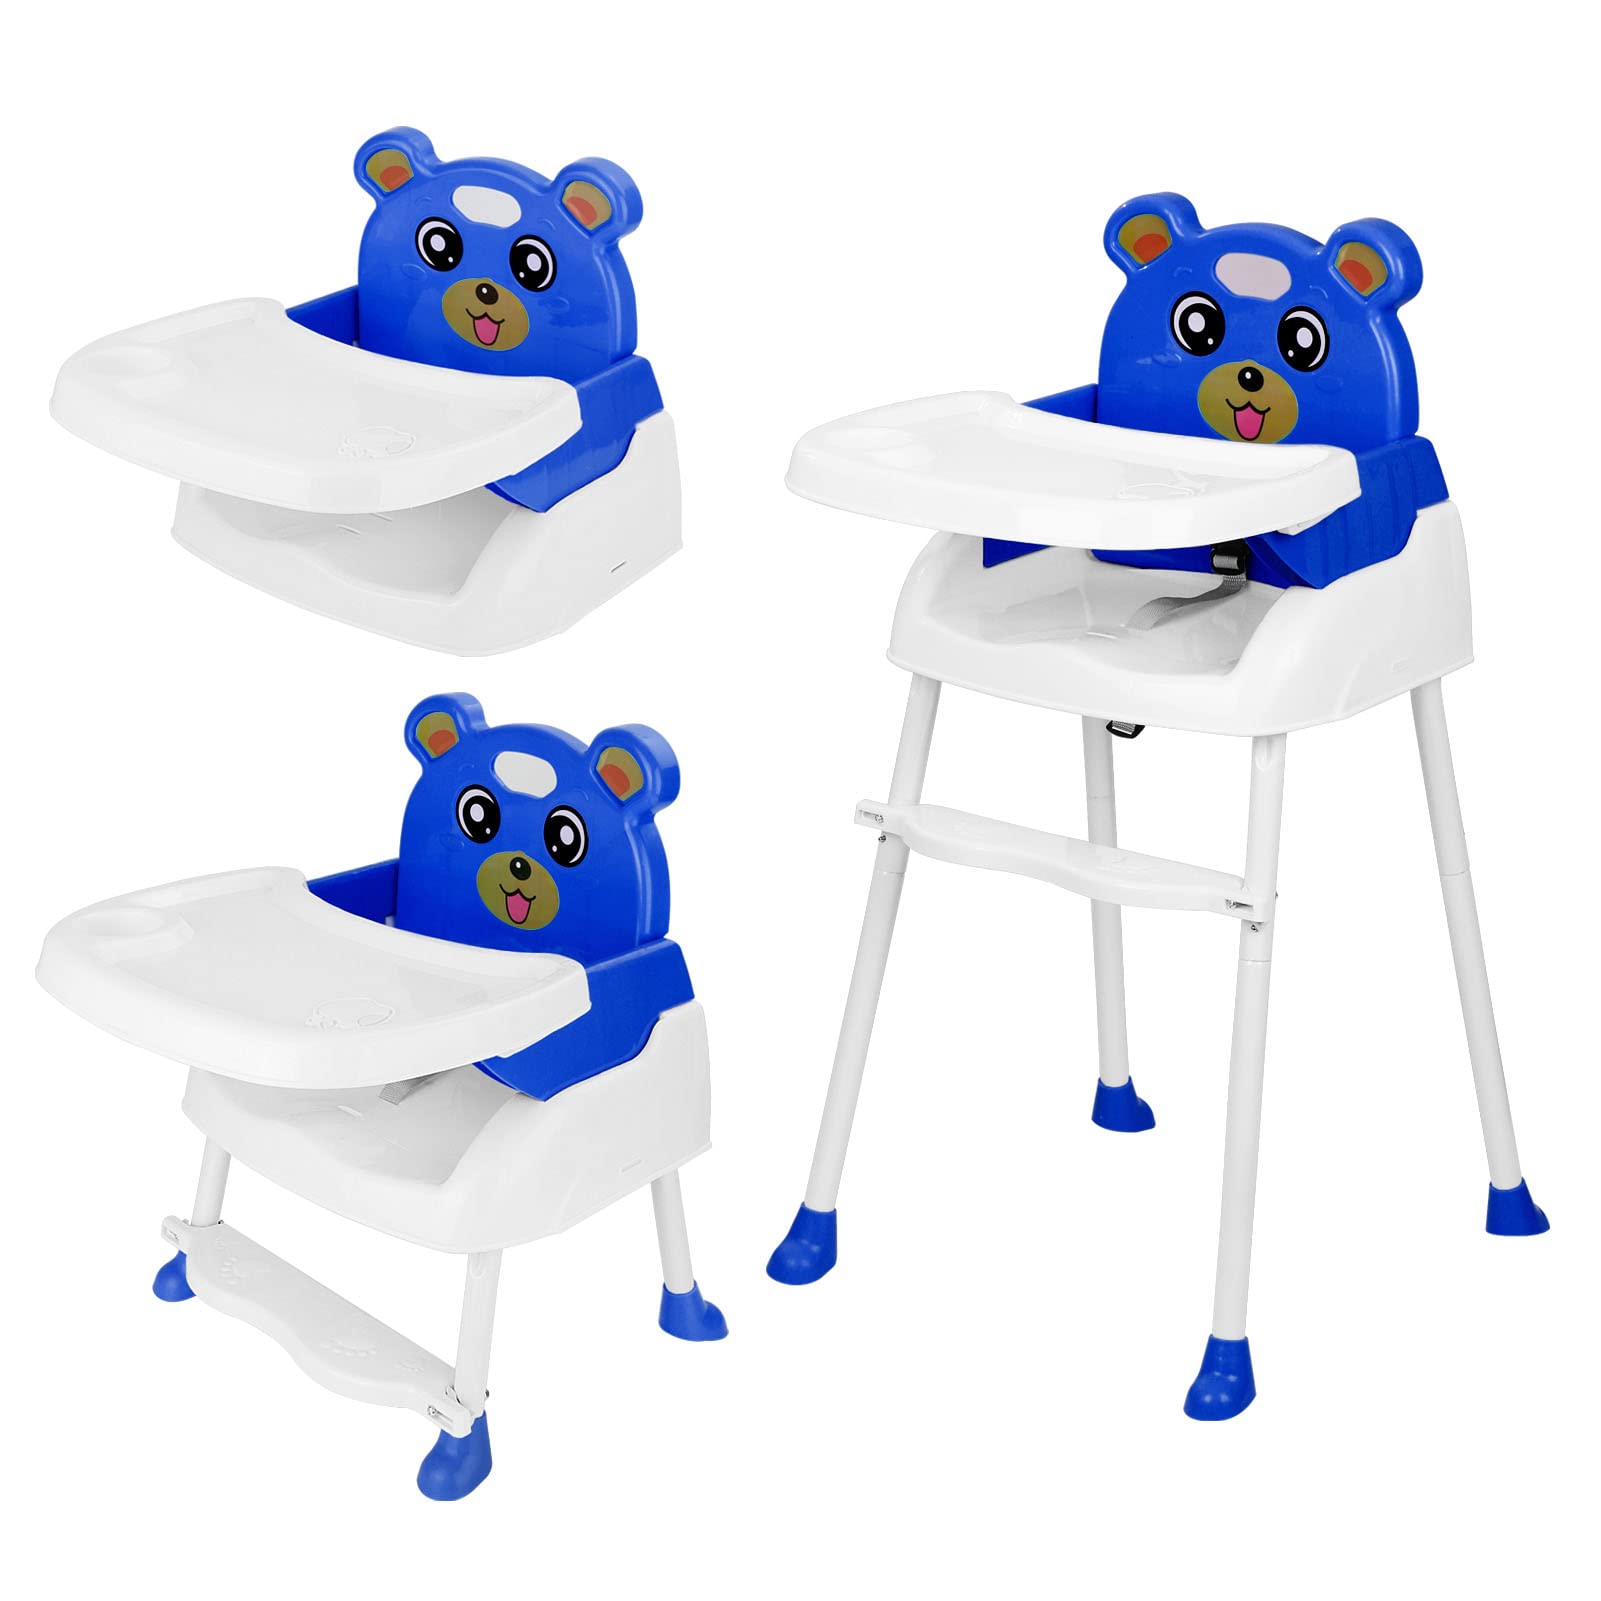 YORKING 4 in1 Kinderhochstuhl Höhenverstellbar Hochstuhl Kinder mit tisch Essstuhl Treppenhochstuhl Klappbar für Babystuhl Blau